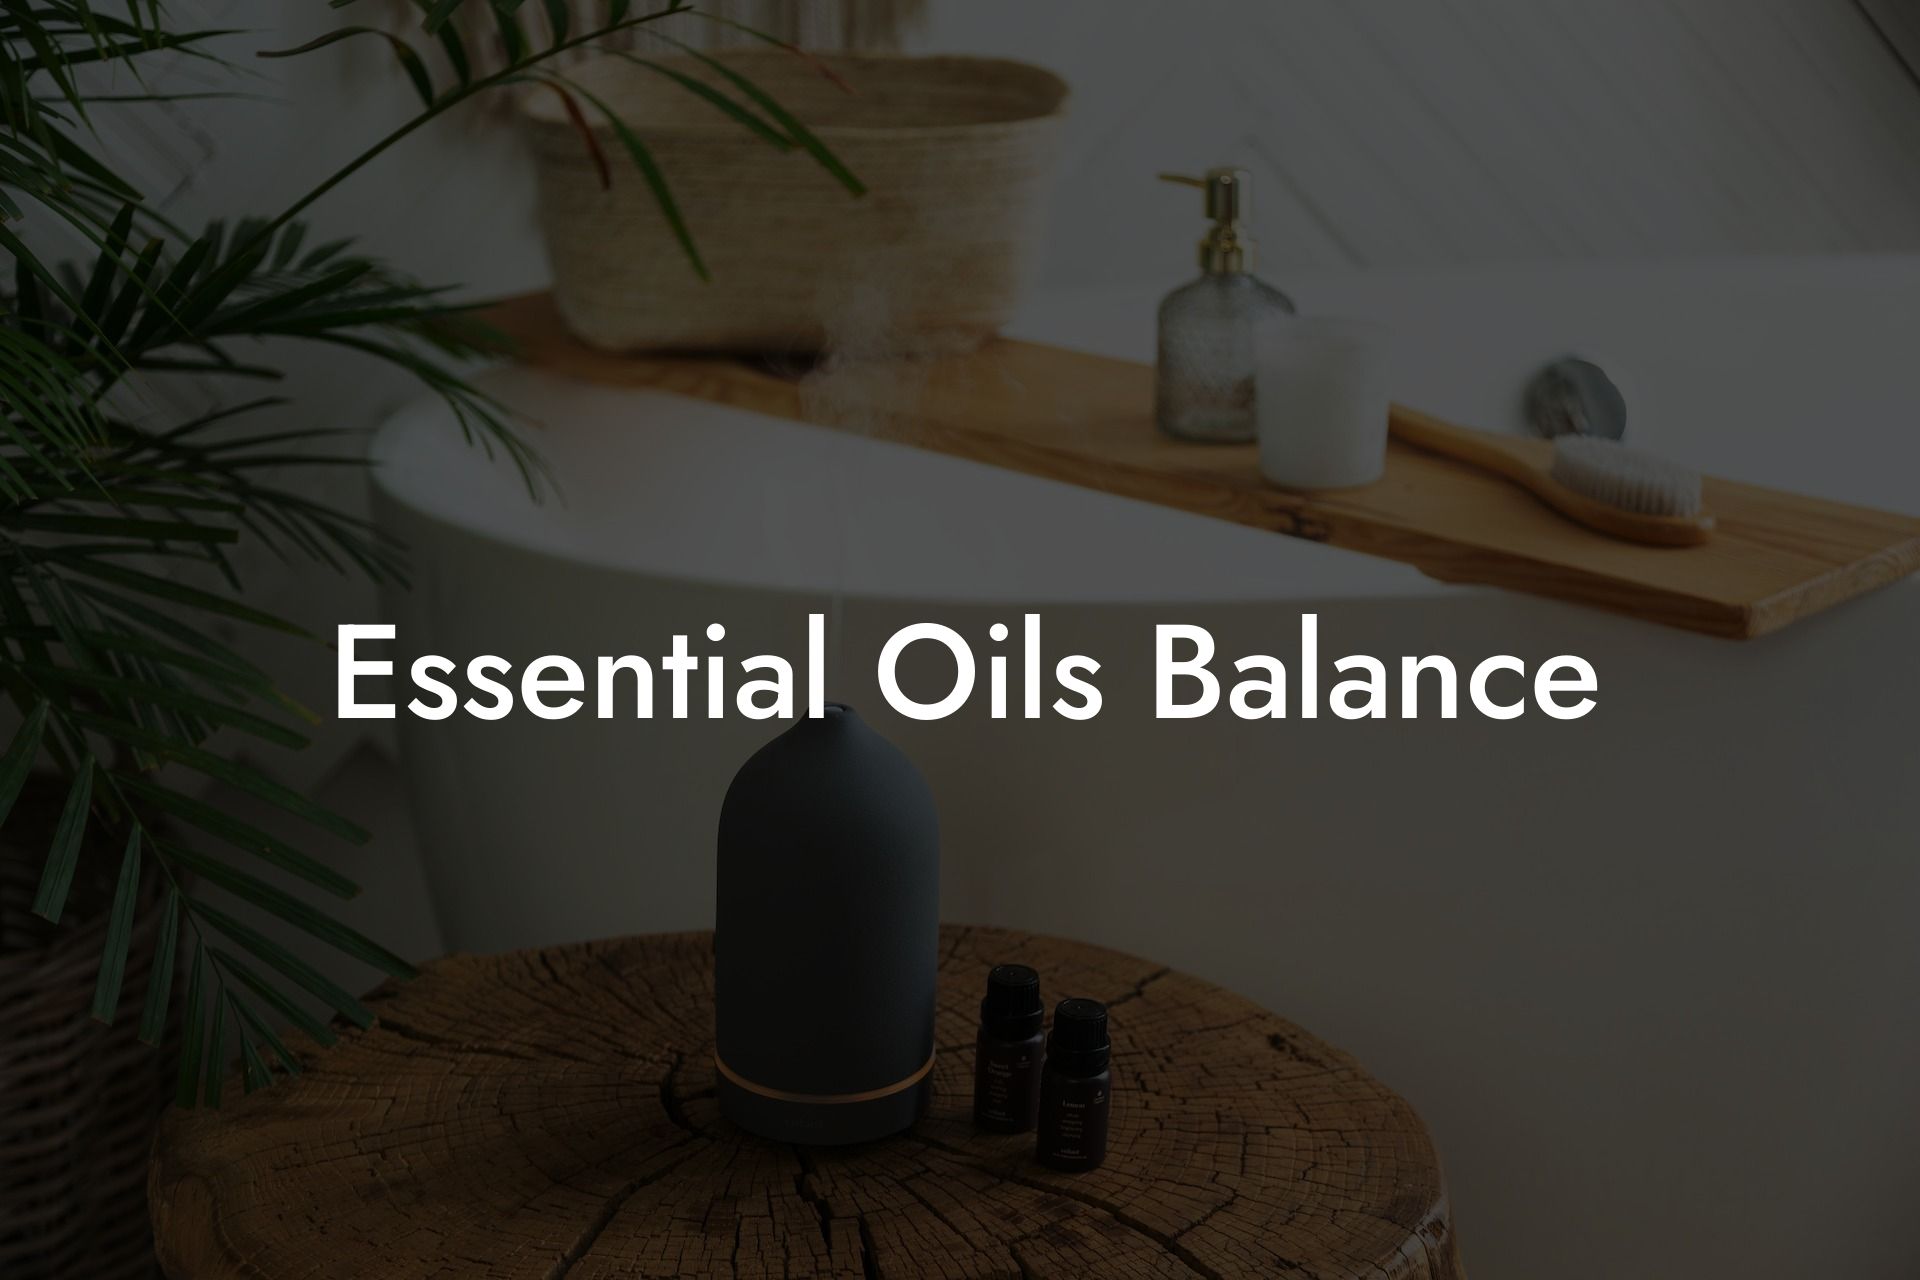 Essential Oils Balance